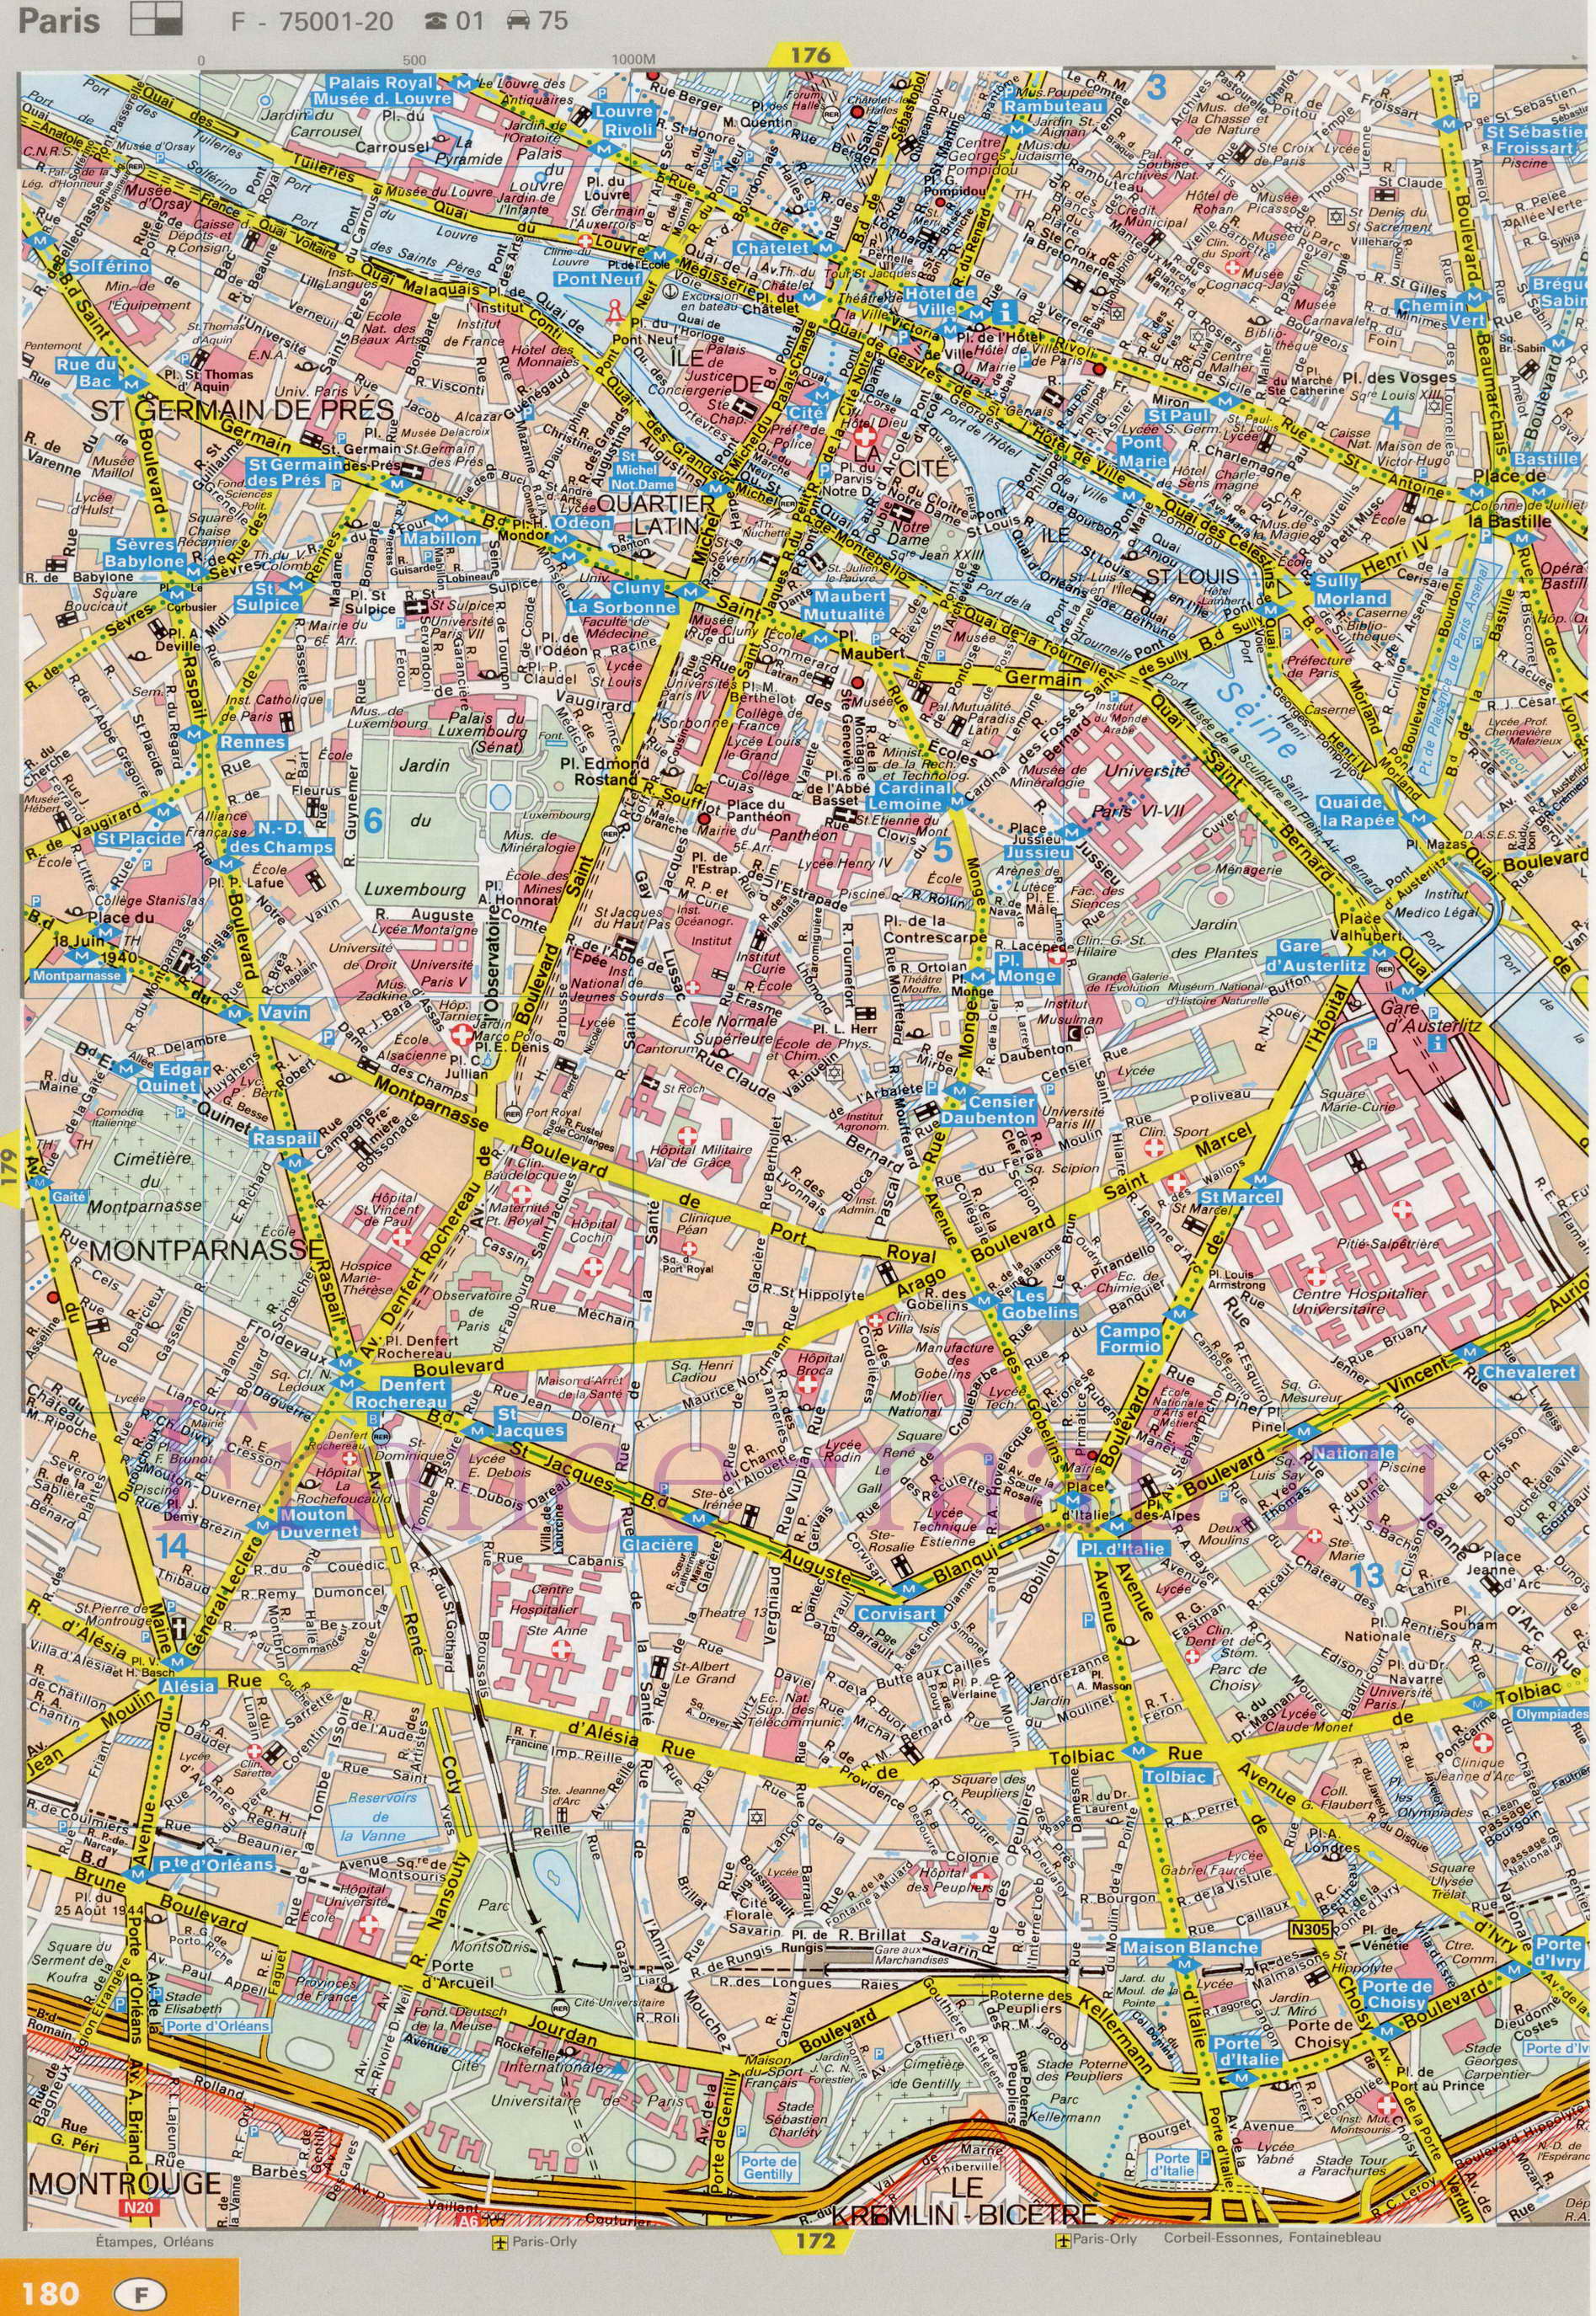 Карта улиц Парижа. Подробная карта Парижа с названиями улиц. Карта Парижа с улицами и достопримечательностями, C1 - 